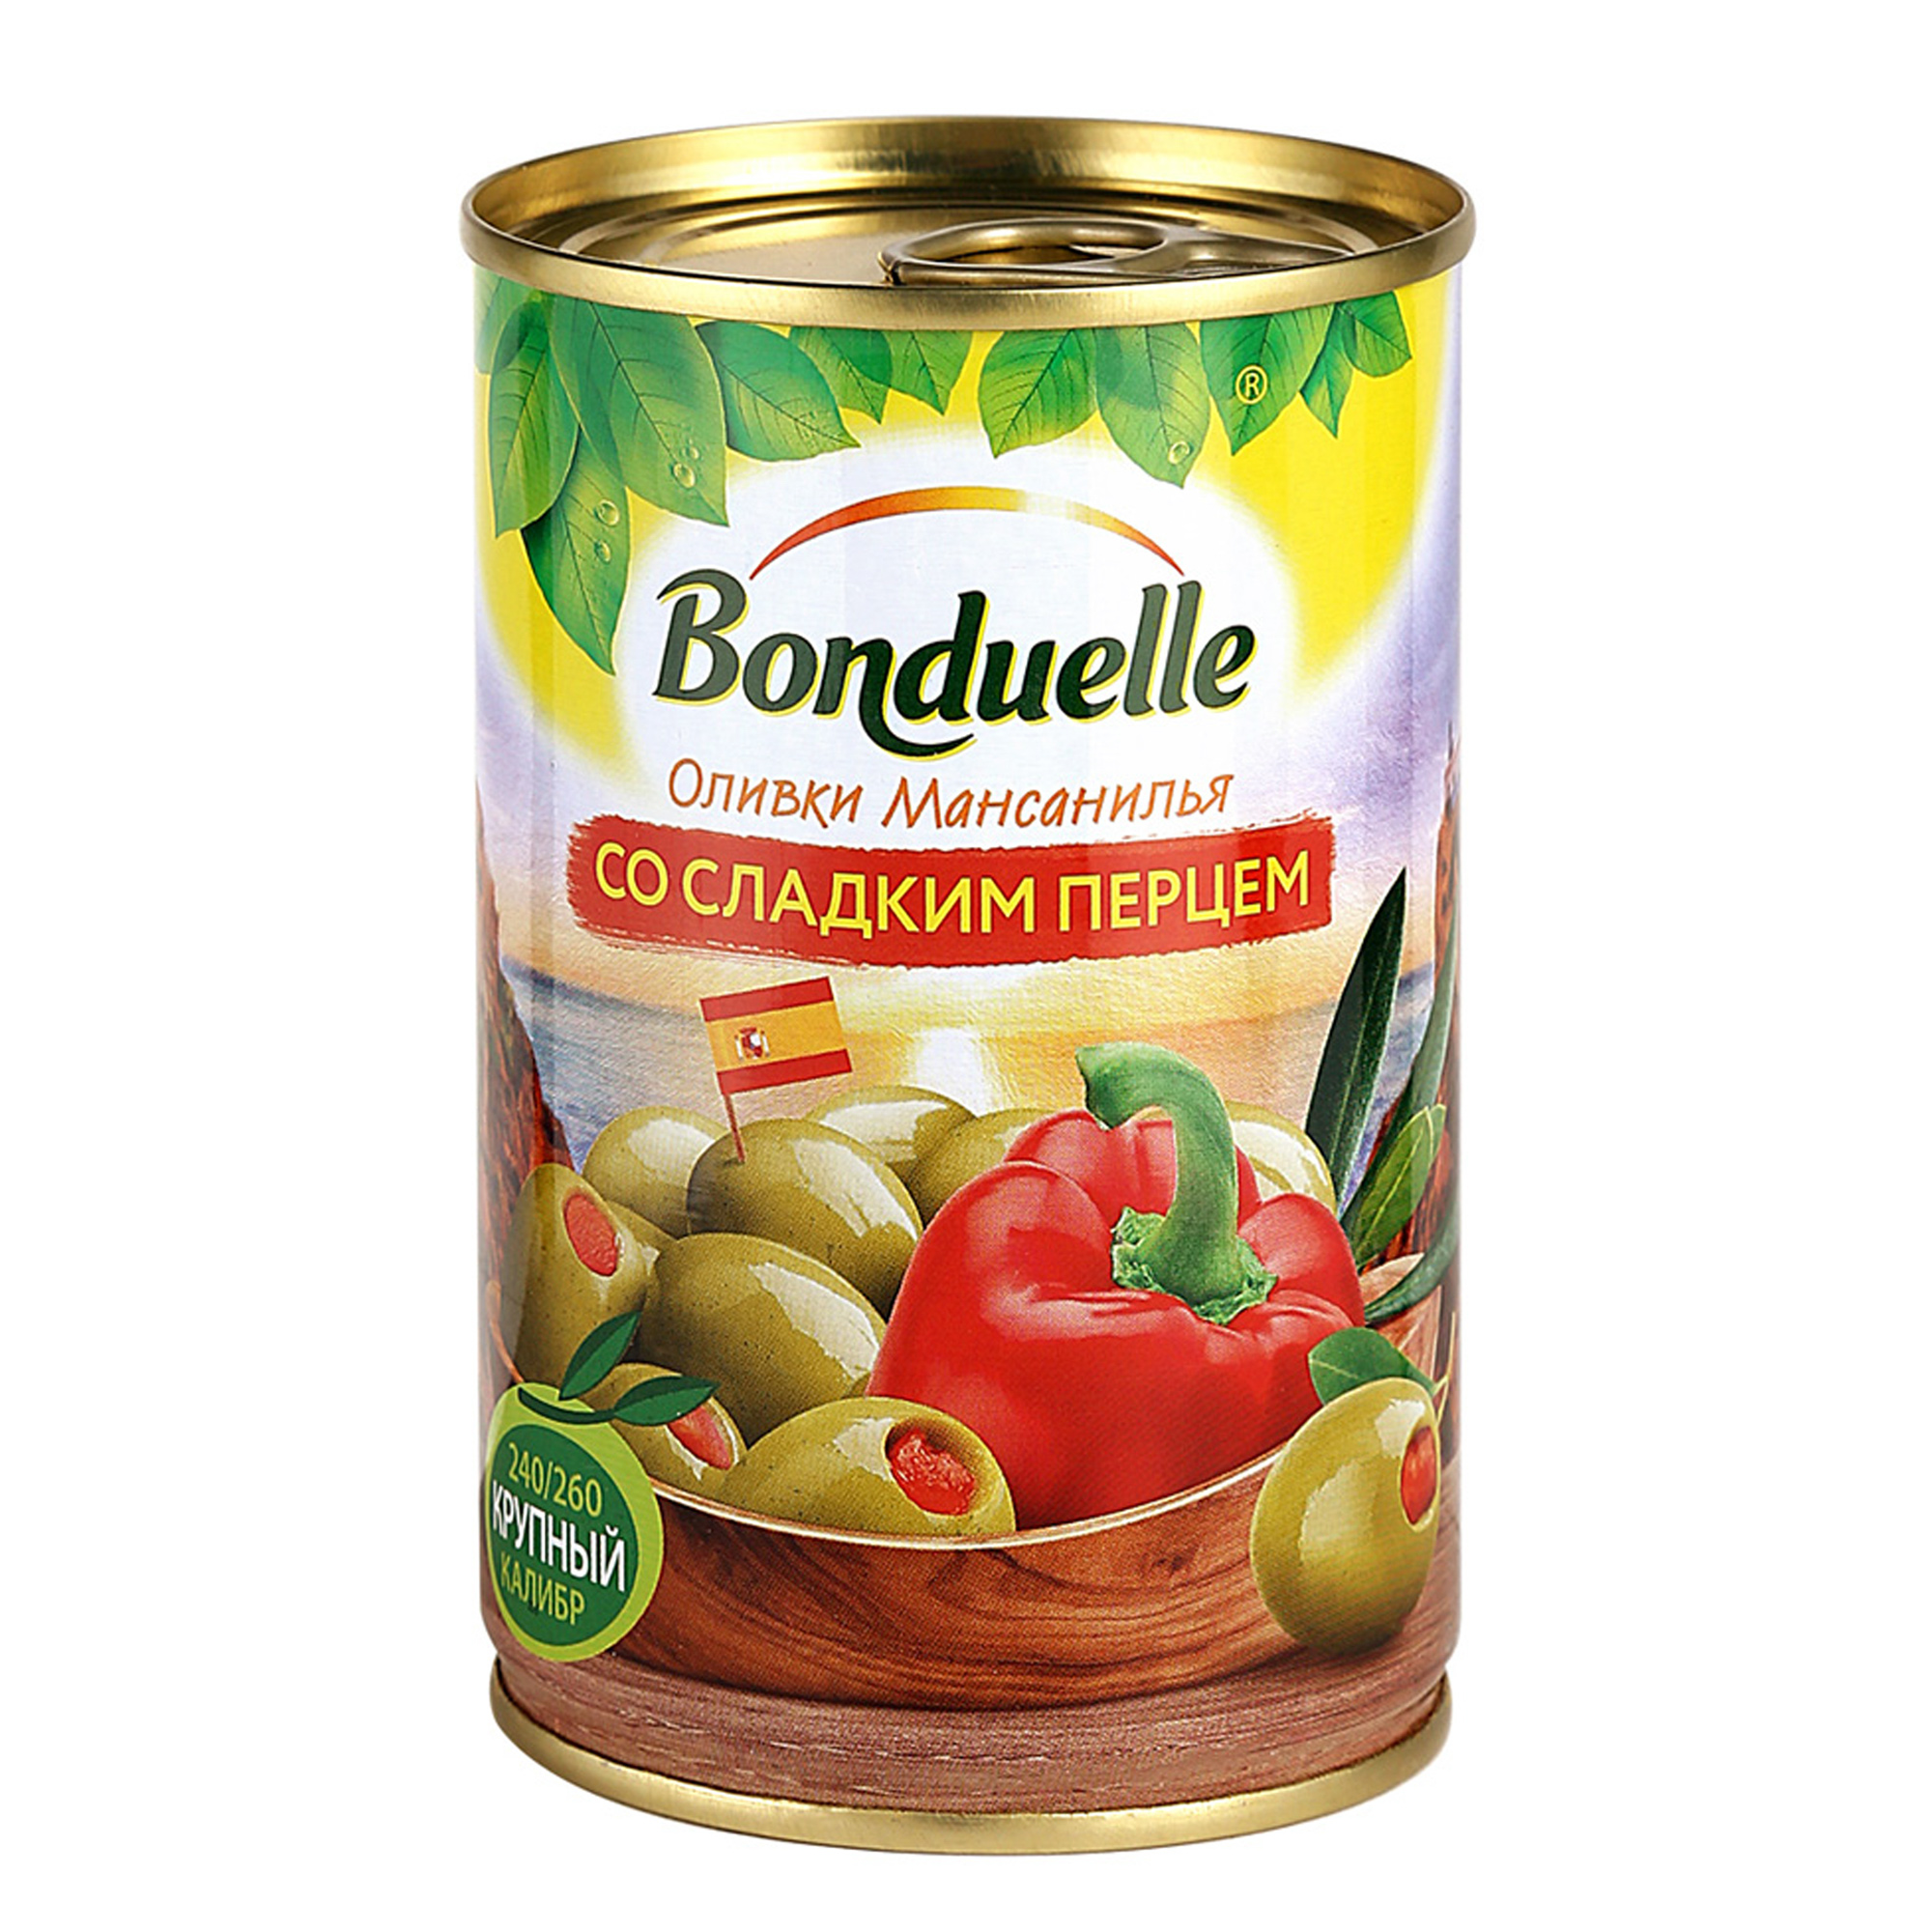 Оливки Bonduelle со сладким перцем 314 г томаты маринованные астраханское изобилие со сладким перцем 900 г